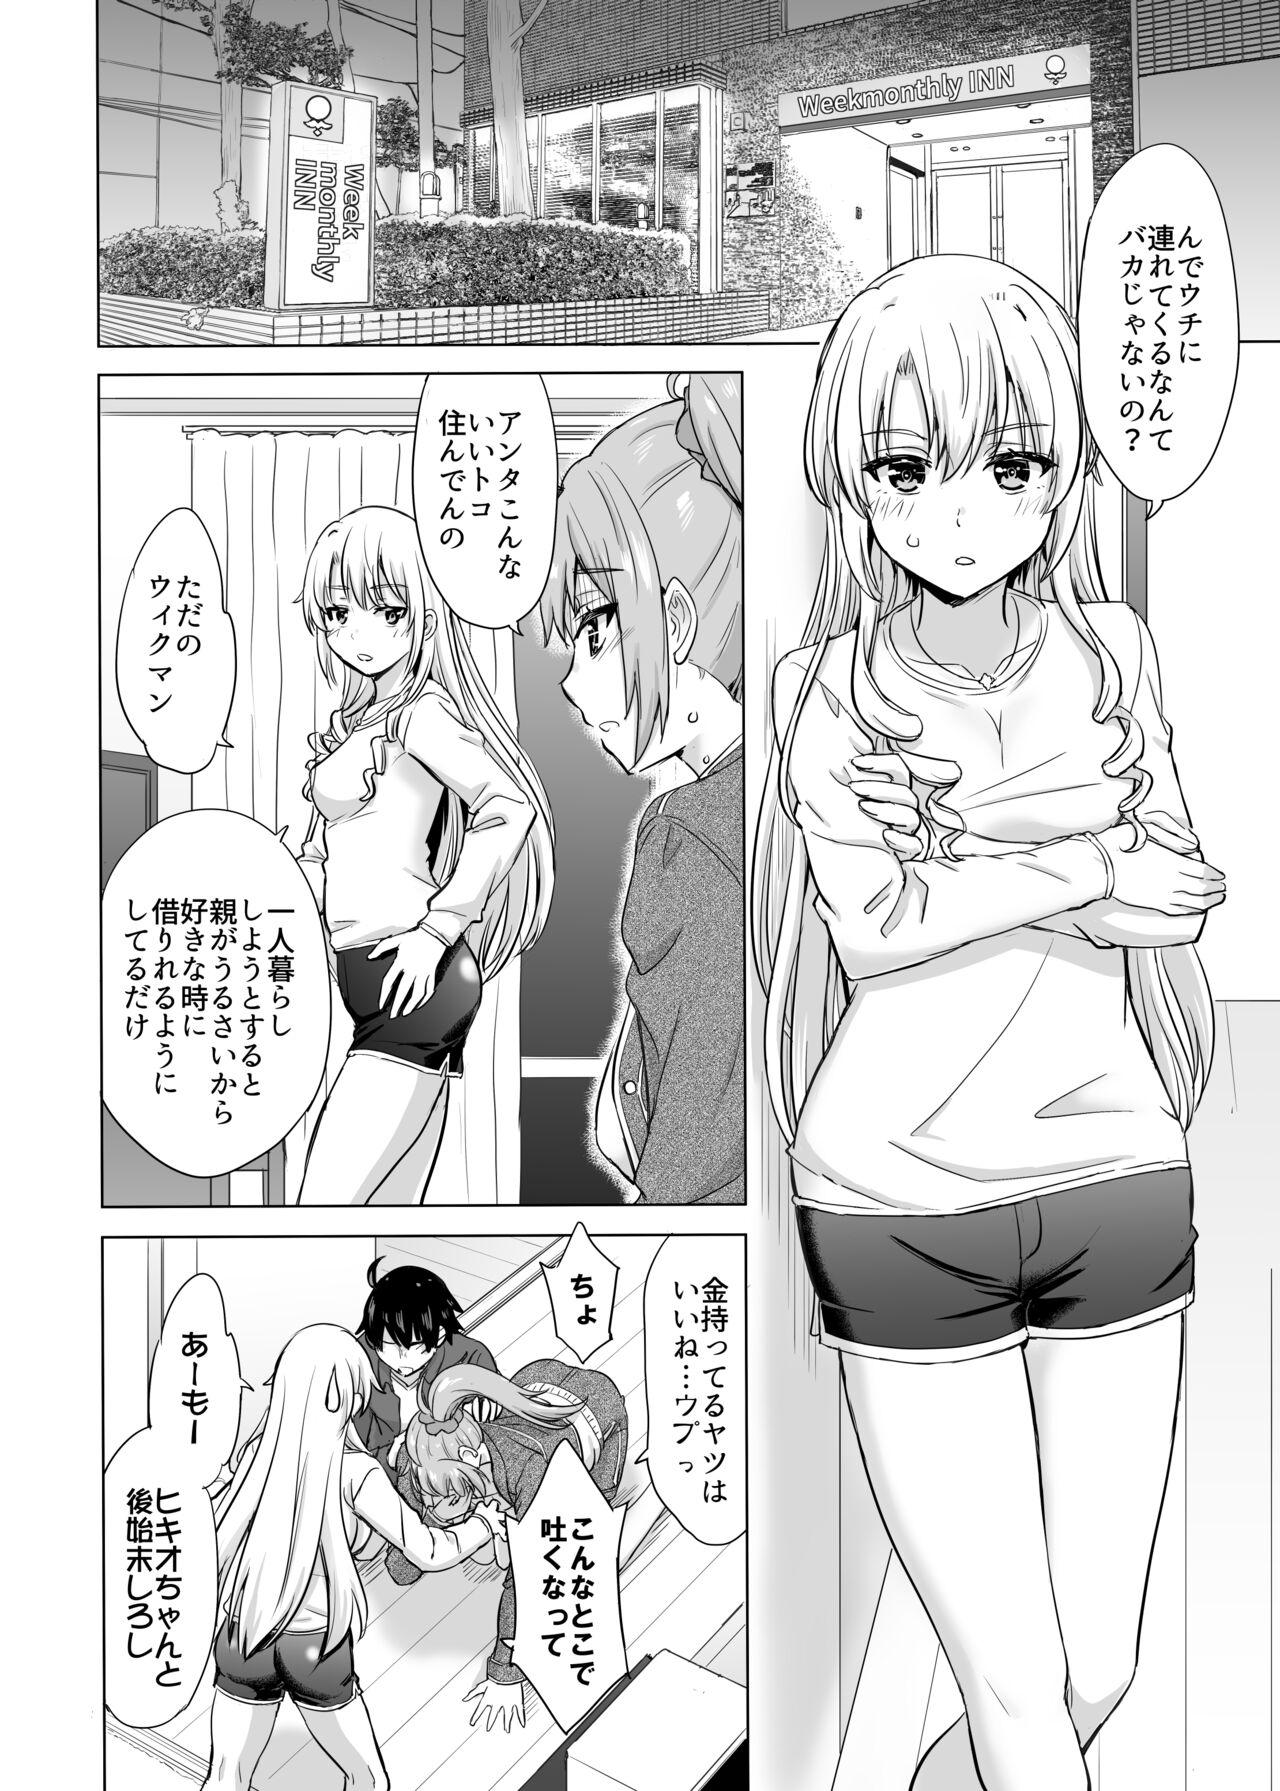 Office Sex Ashi-san Saki Saki Manga - Yahari ore no seishun love come wa machigatteiru Gay Public - Picture 2